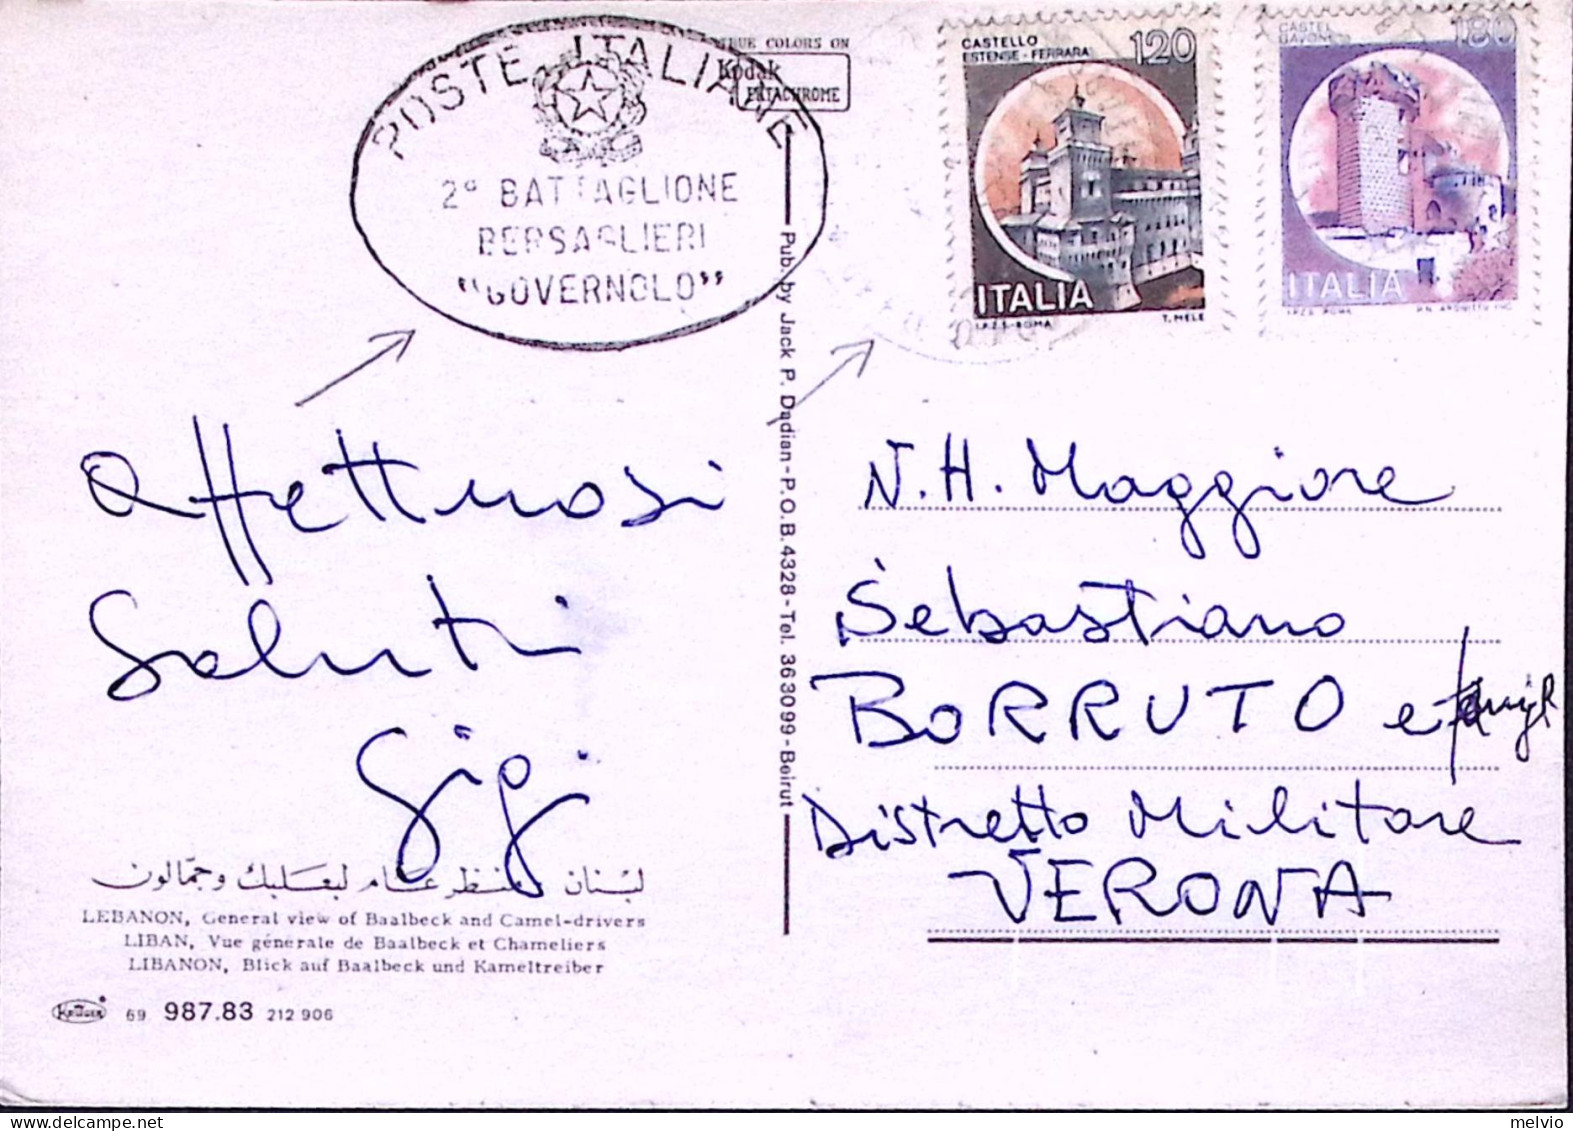 1983-POSTE ITALIANE-2 BATTAGLIONE BERSAGLIERI /GOVERNOLO/ Ovale Su Cartolina Via - Altre Guerre